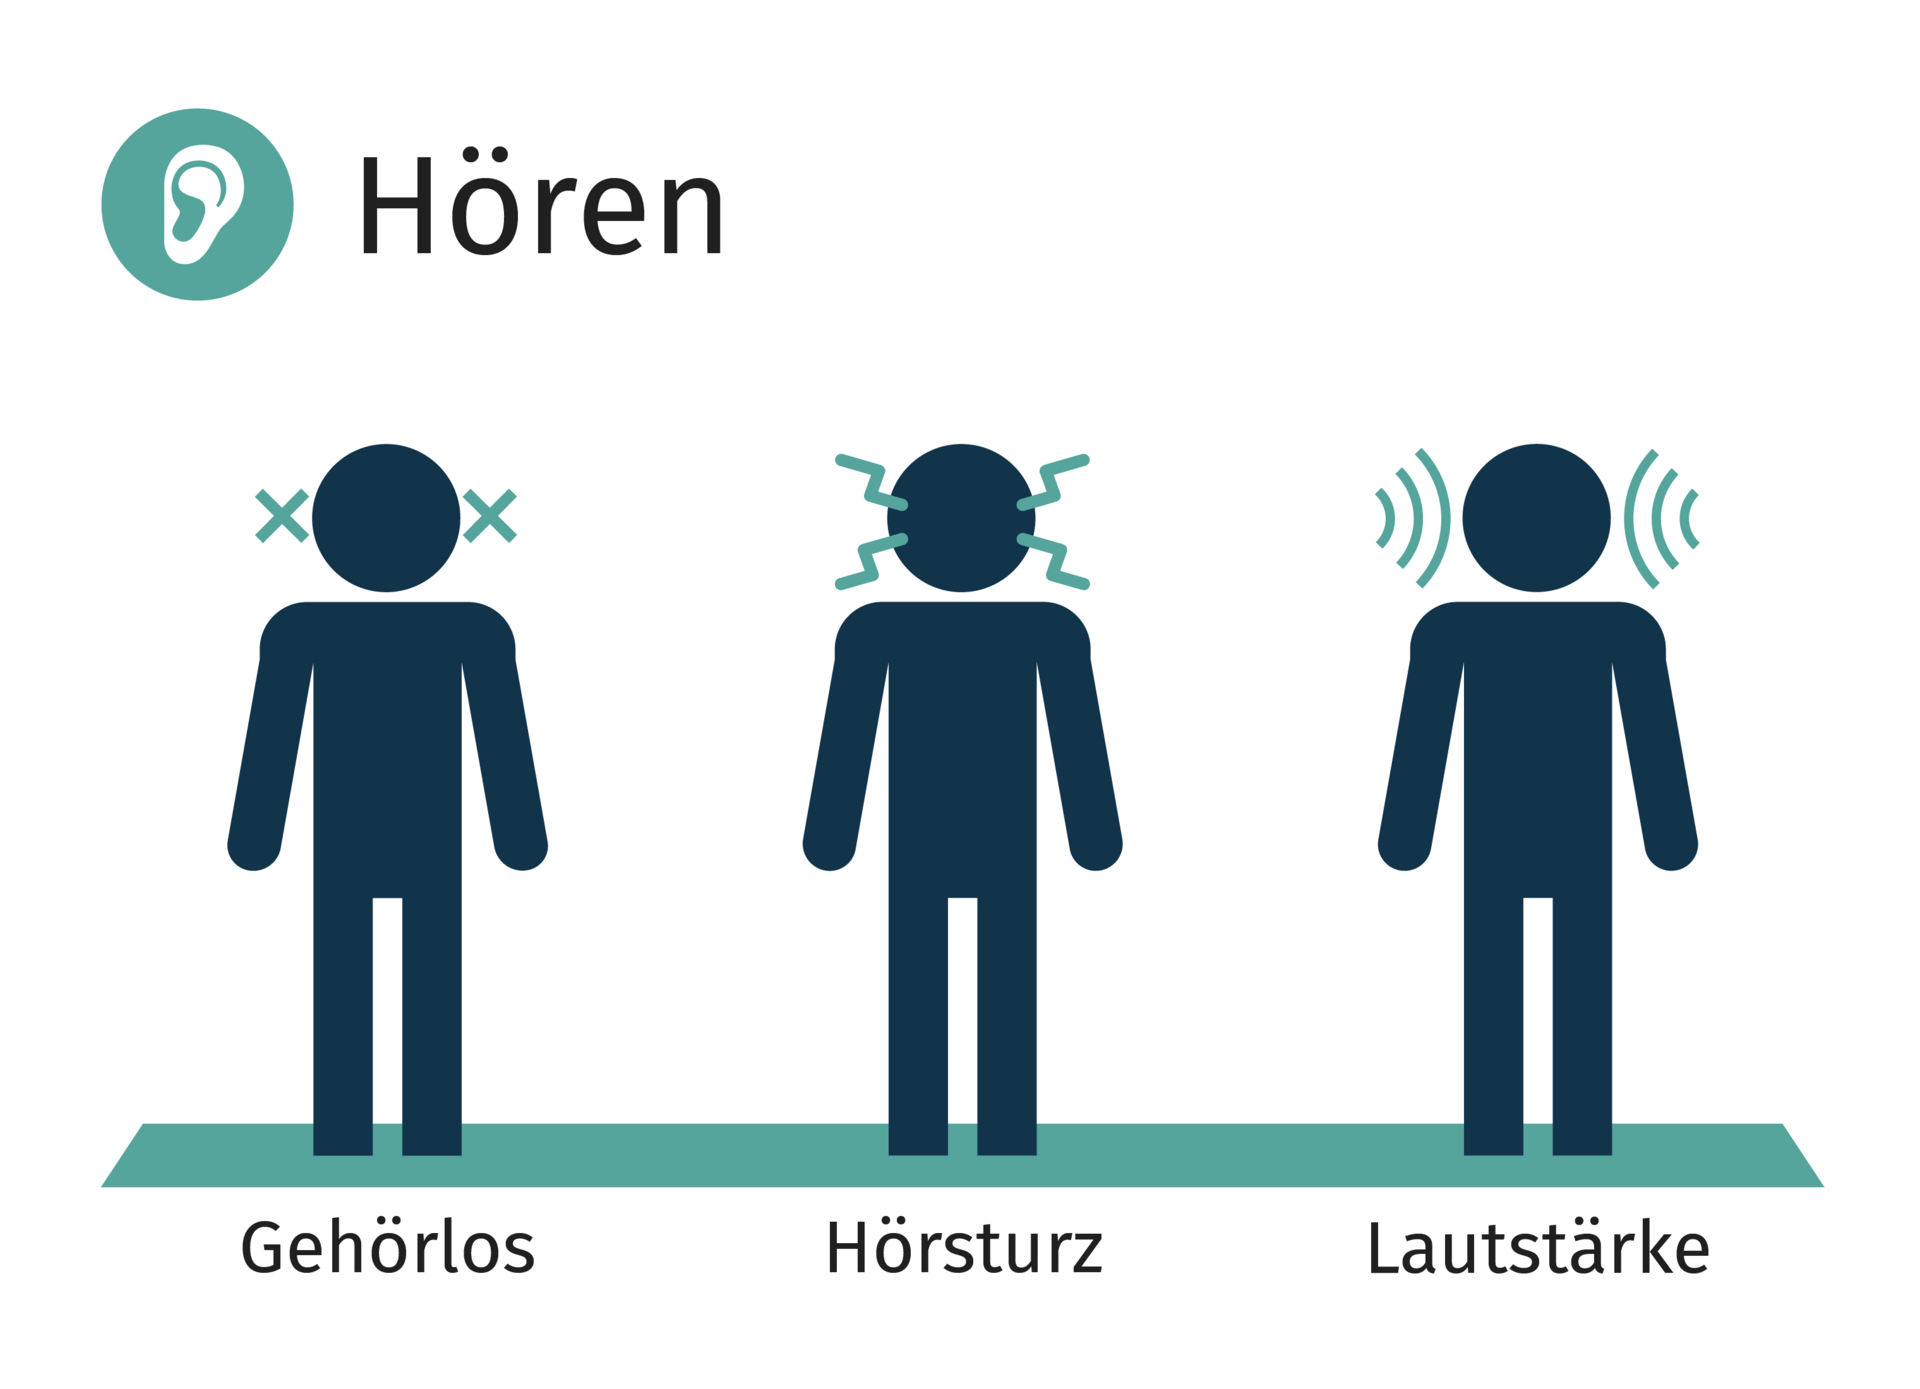 Darstellung von drei Personen, bei denen im Bereich 'Hören' jeweils eine Einschränkung durch Gehörlosigkeit, eine Hörsturz oder durch laute Umgebung symbolisiert wird.